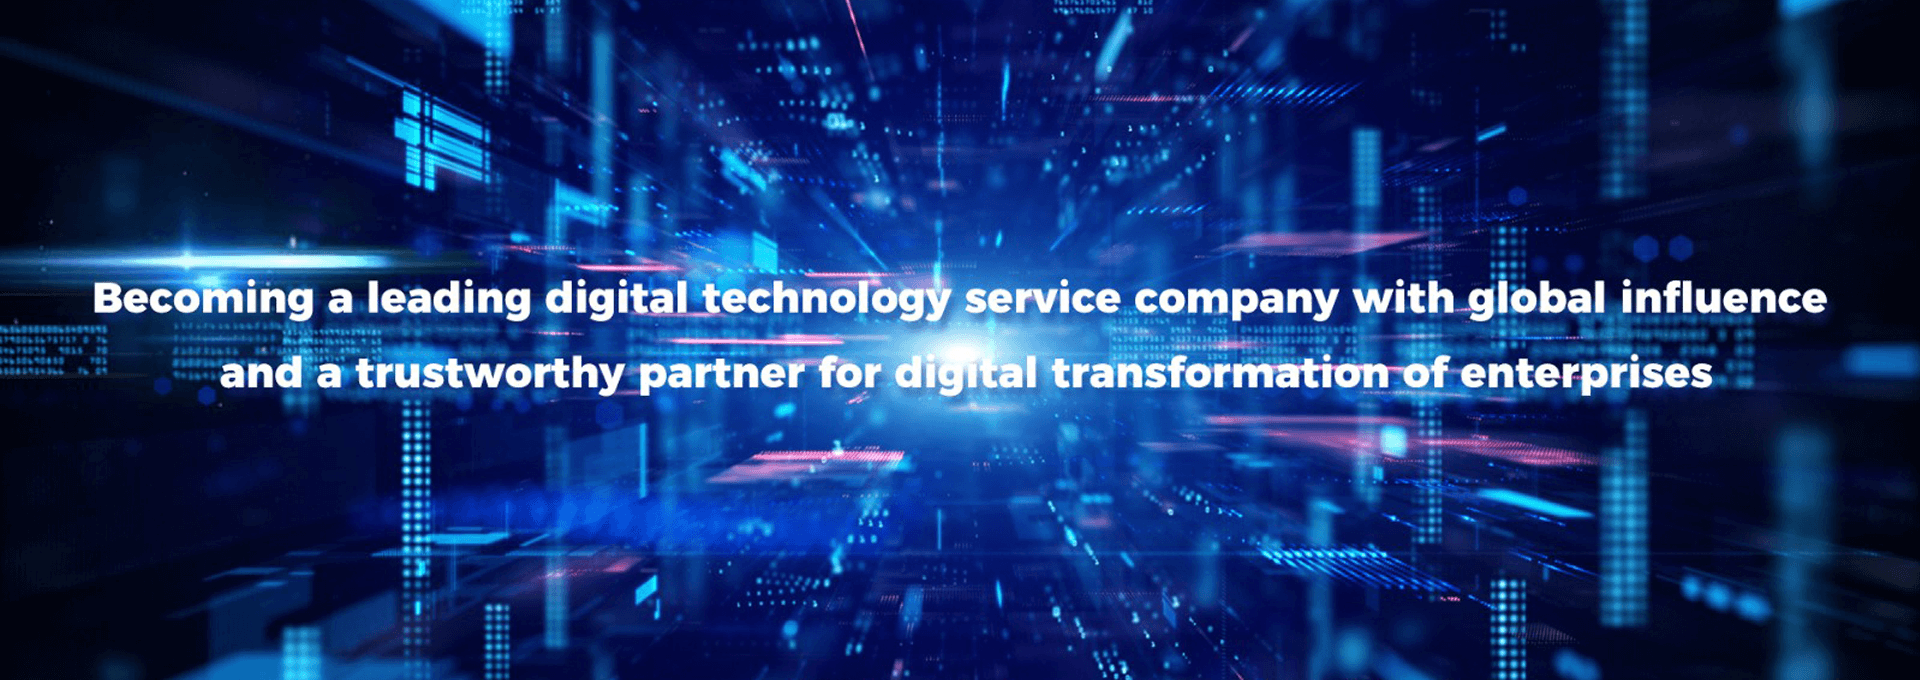 端到端数字化服务能力 为全球众多行业1000+客户持续创造价值